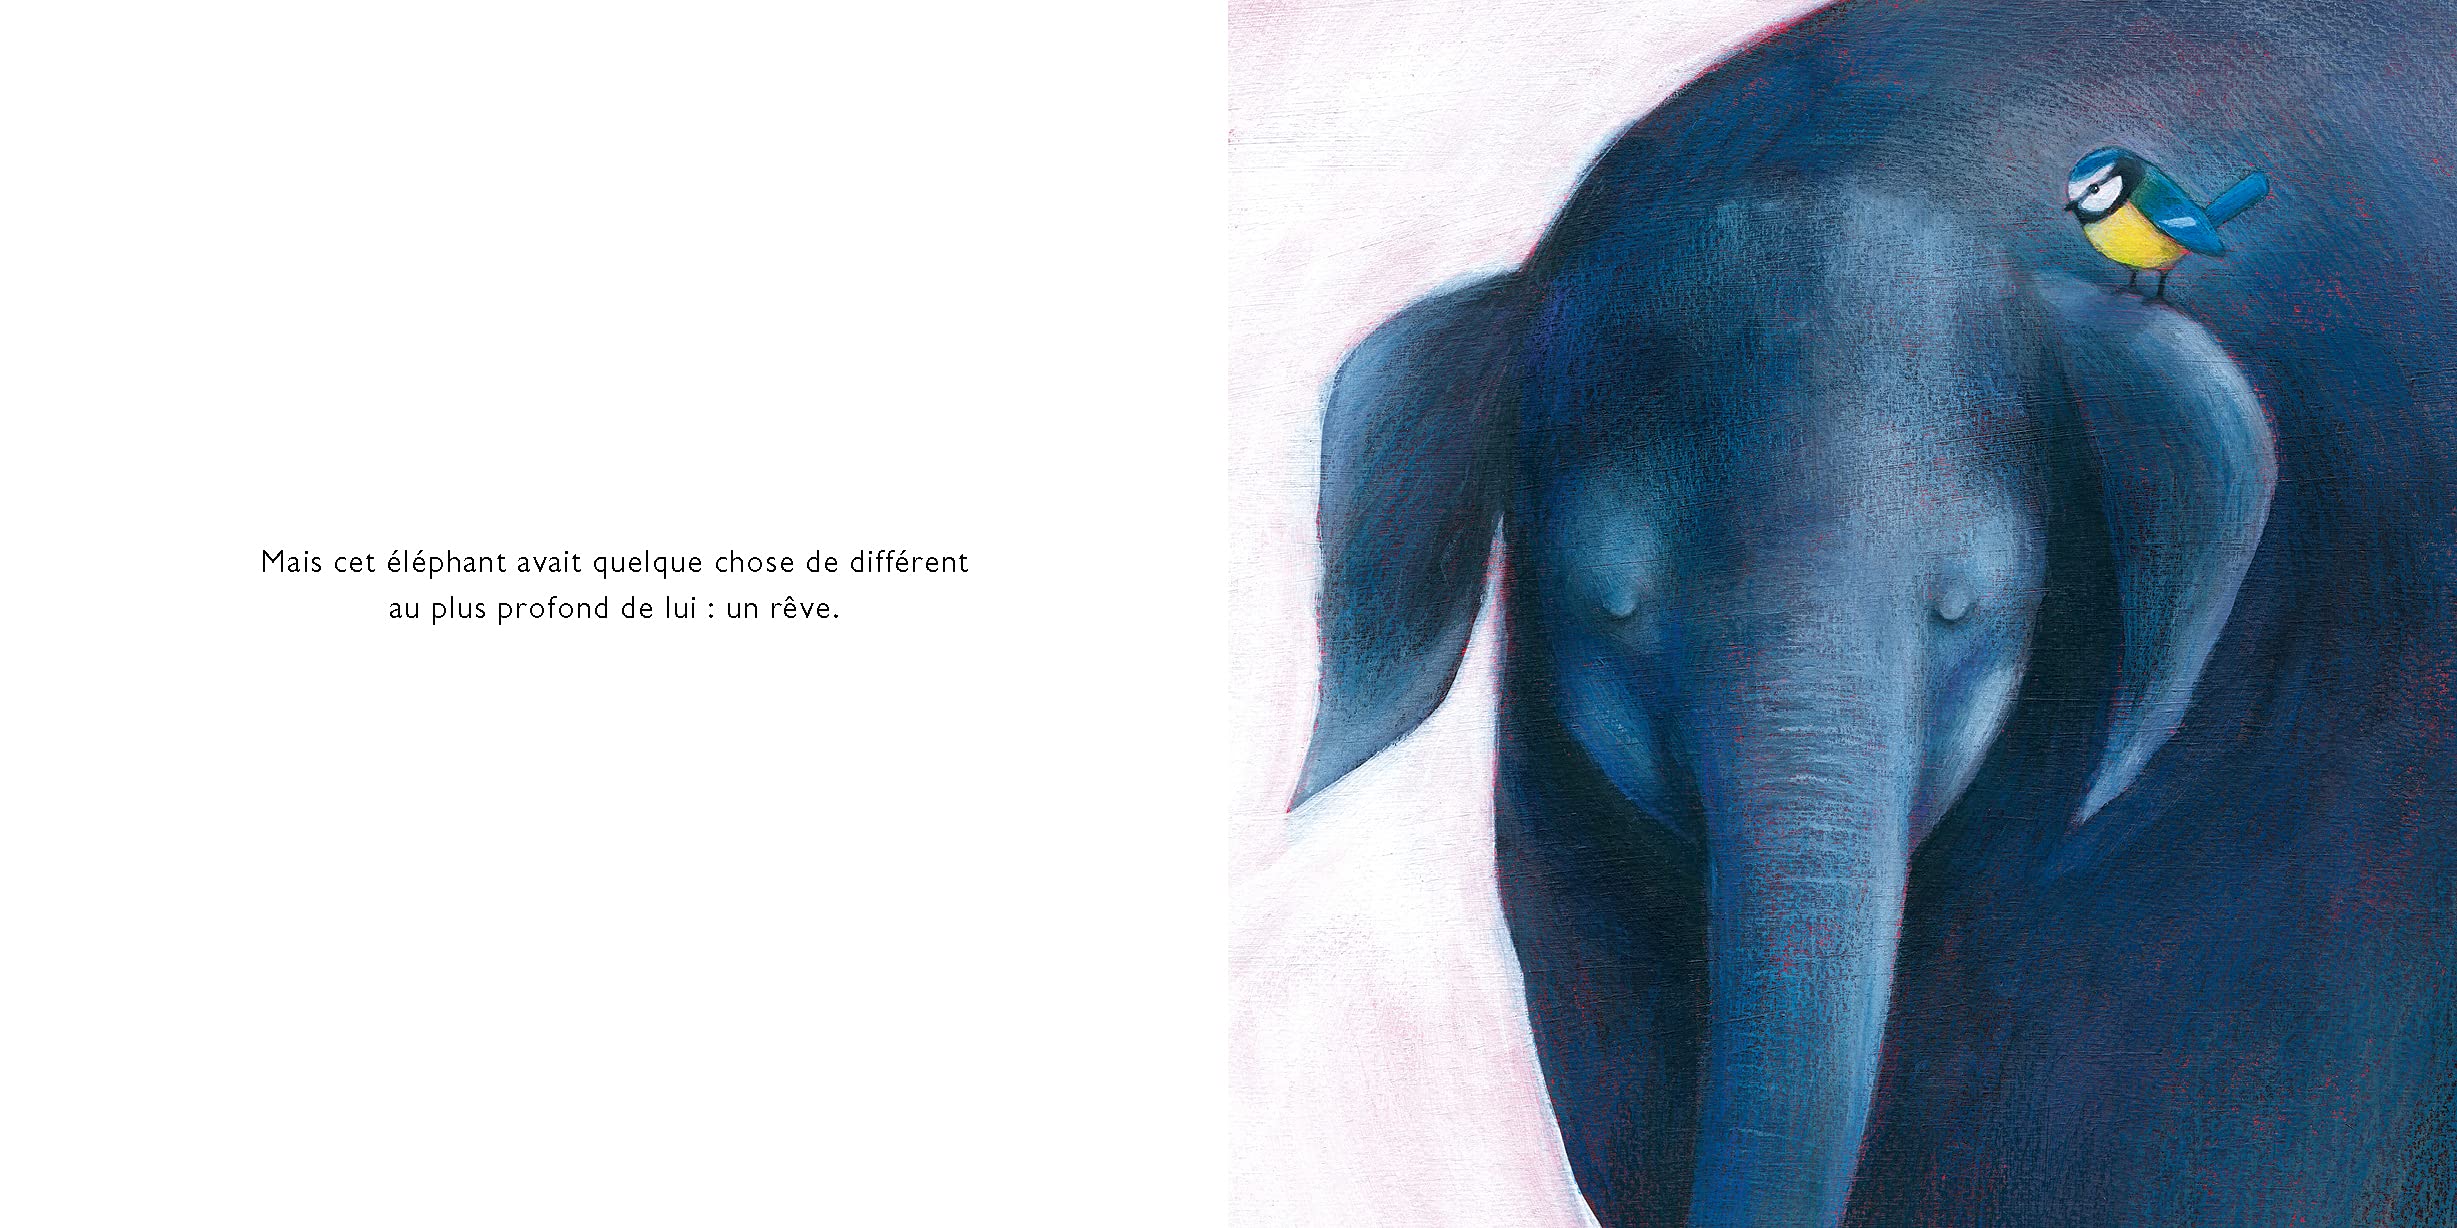 P'tit Elephant 2 - Tableau dessin à l'aquarelle d'un bébé éléphant.